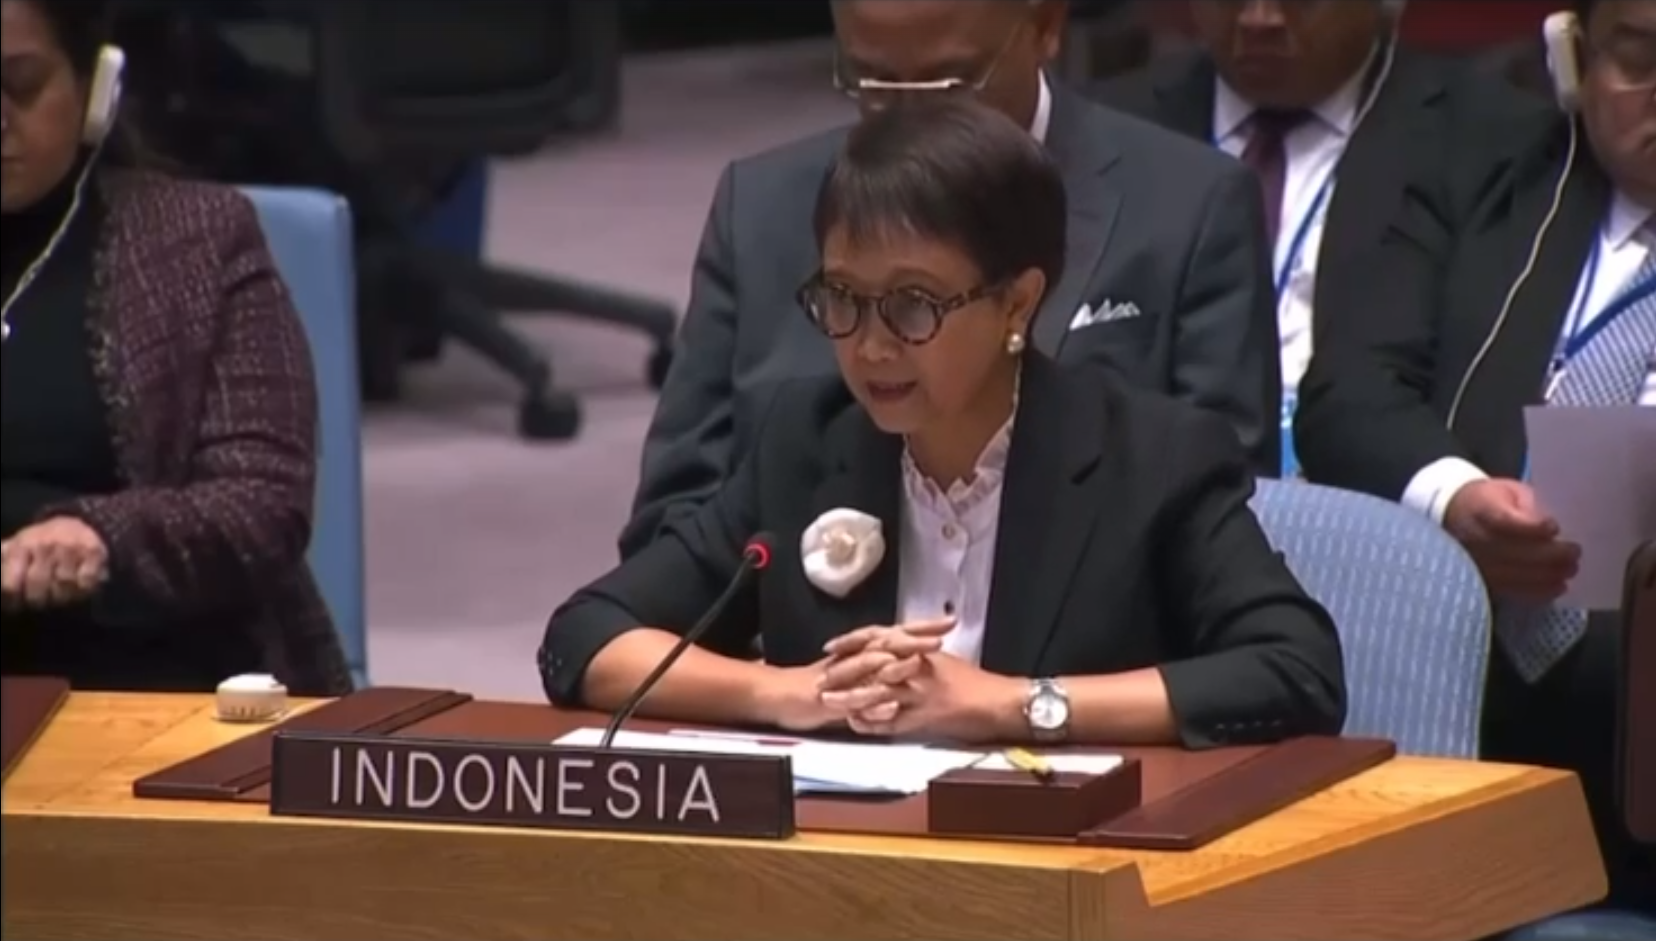 Dihadapan KKT ASEAN Ministerial Meeting, Indonesia Sampaikan Gagasan Ini